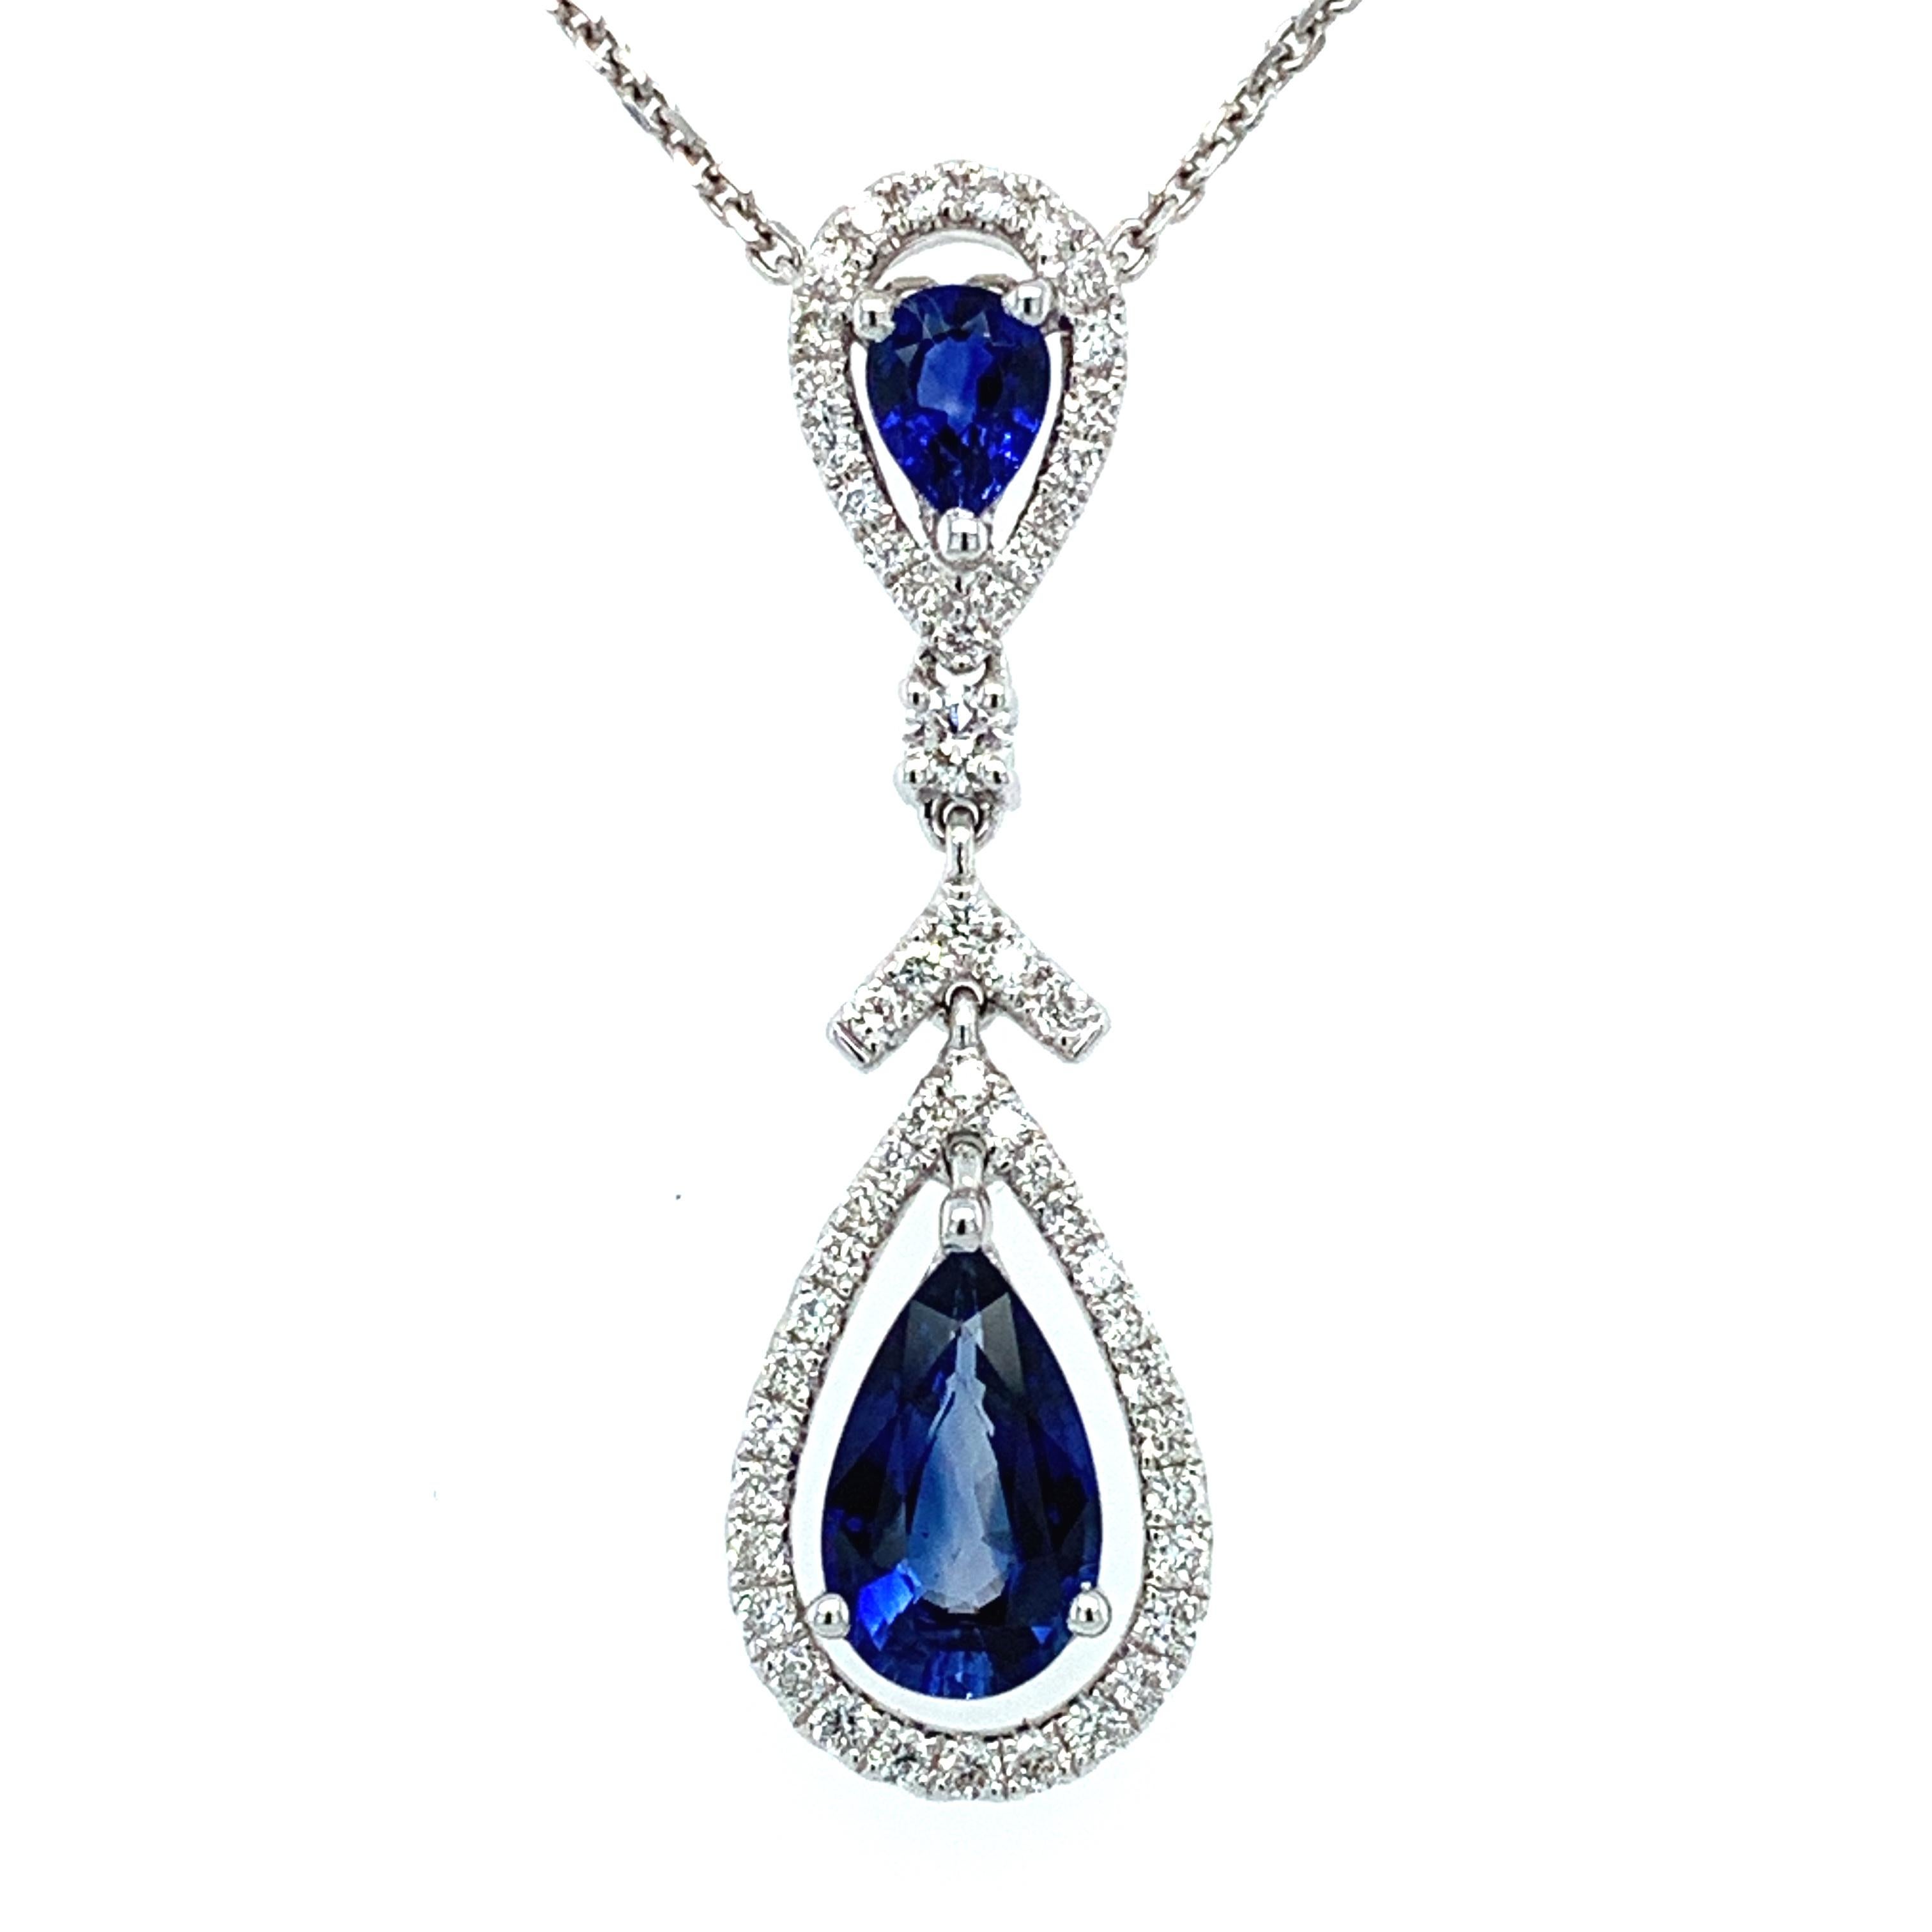 Rehaussez votre collection de bijoux avec ce superbe collier en saphir et diamants. Réalisé en or blanc 18 ct, ce collier présente un magnifique saphir bleu de Ceylan en forme de poire, entouré d'un halo de diamants étincelants. Le collier mesure